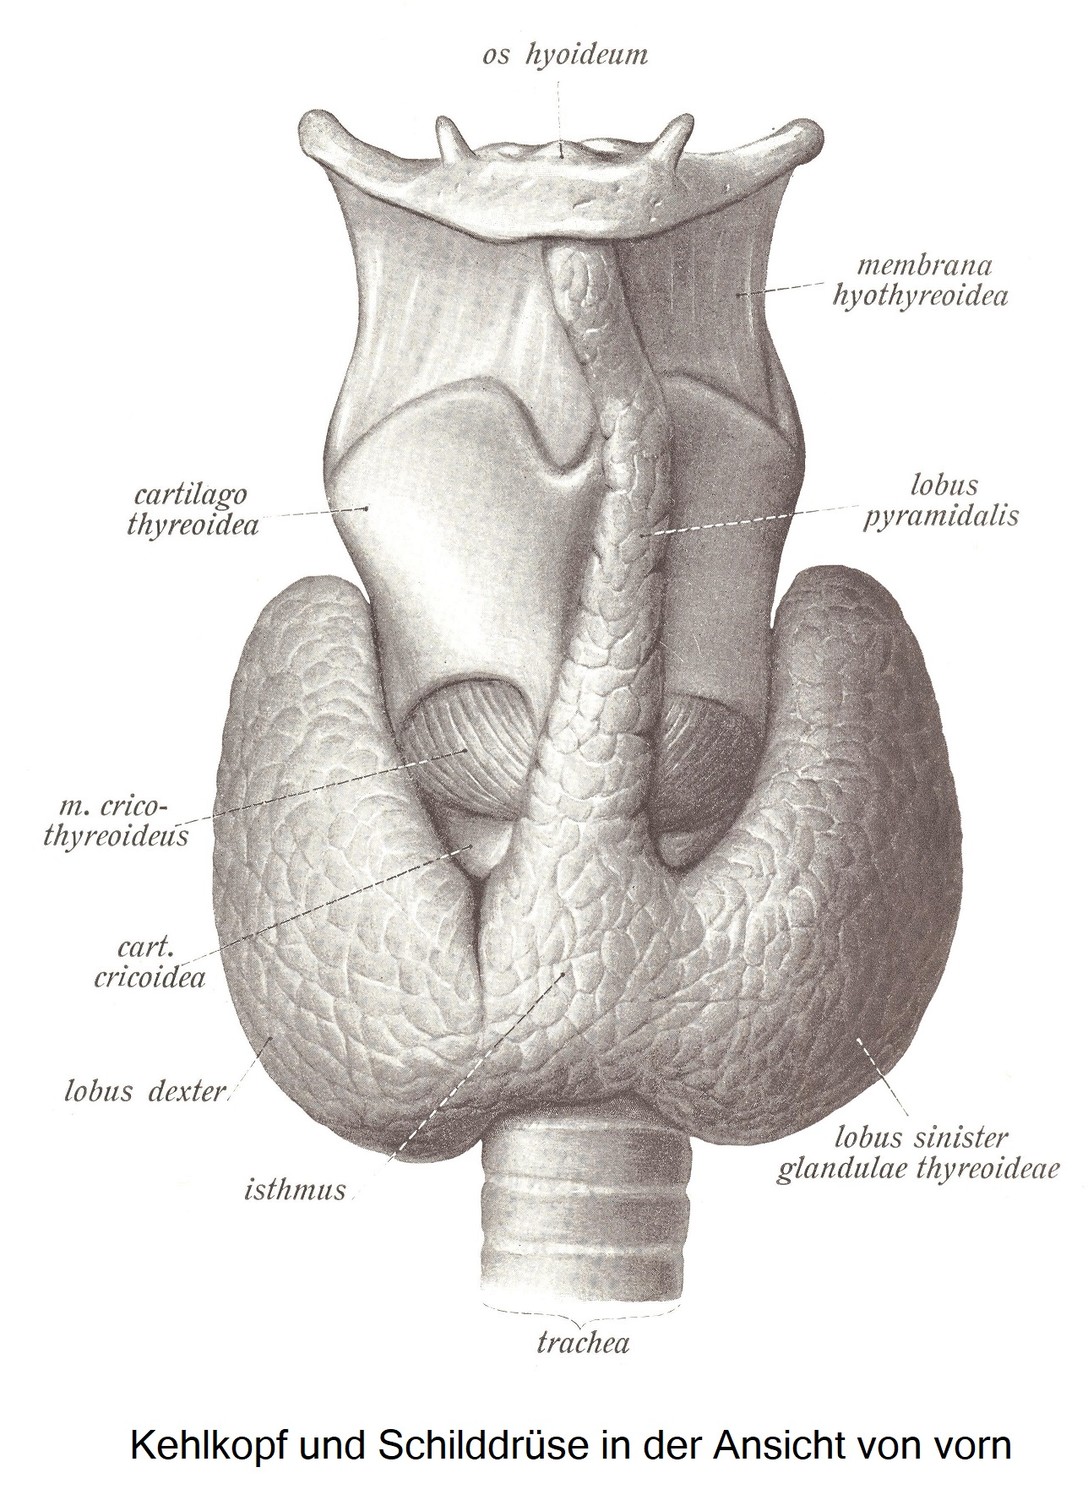 Die Schilddrüse, glandula thyreoidea